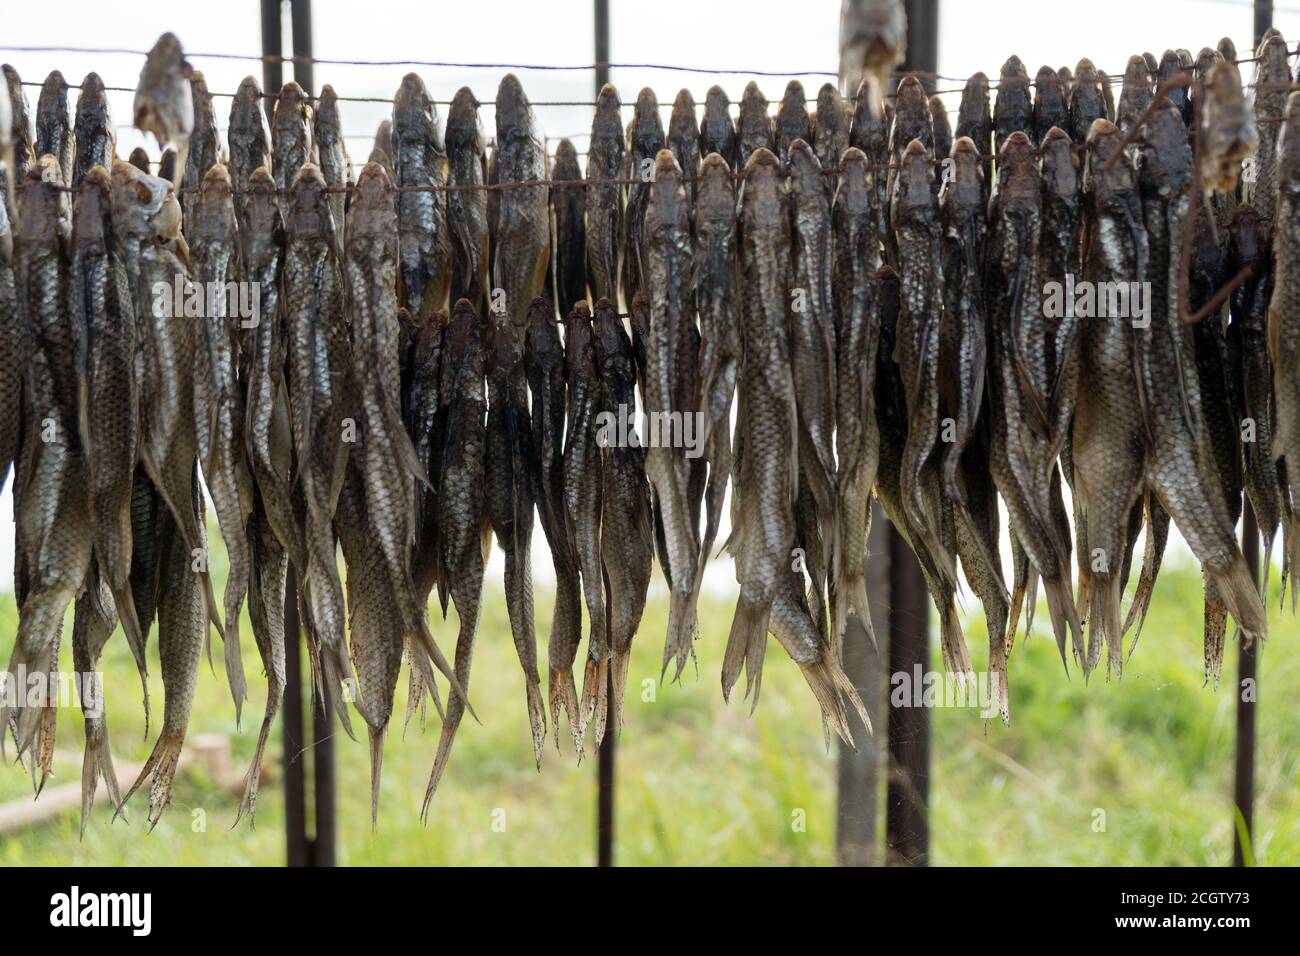 Viele gesalzene Fische werden an Seilen im Freien in großen Mengen getrocknet. Stockfoto